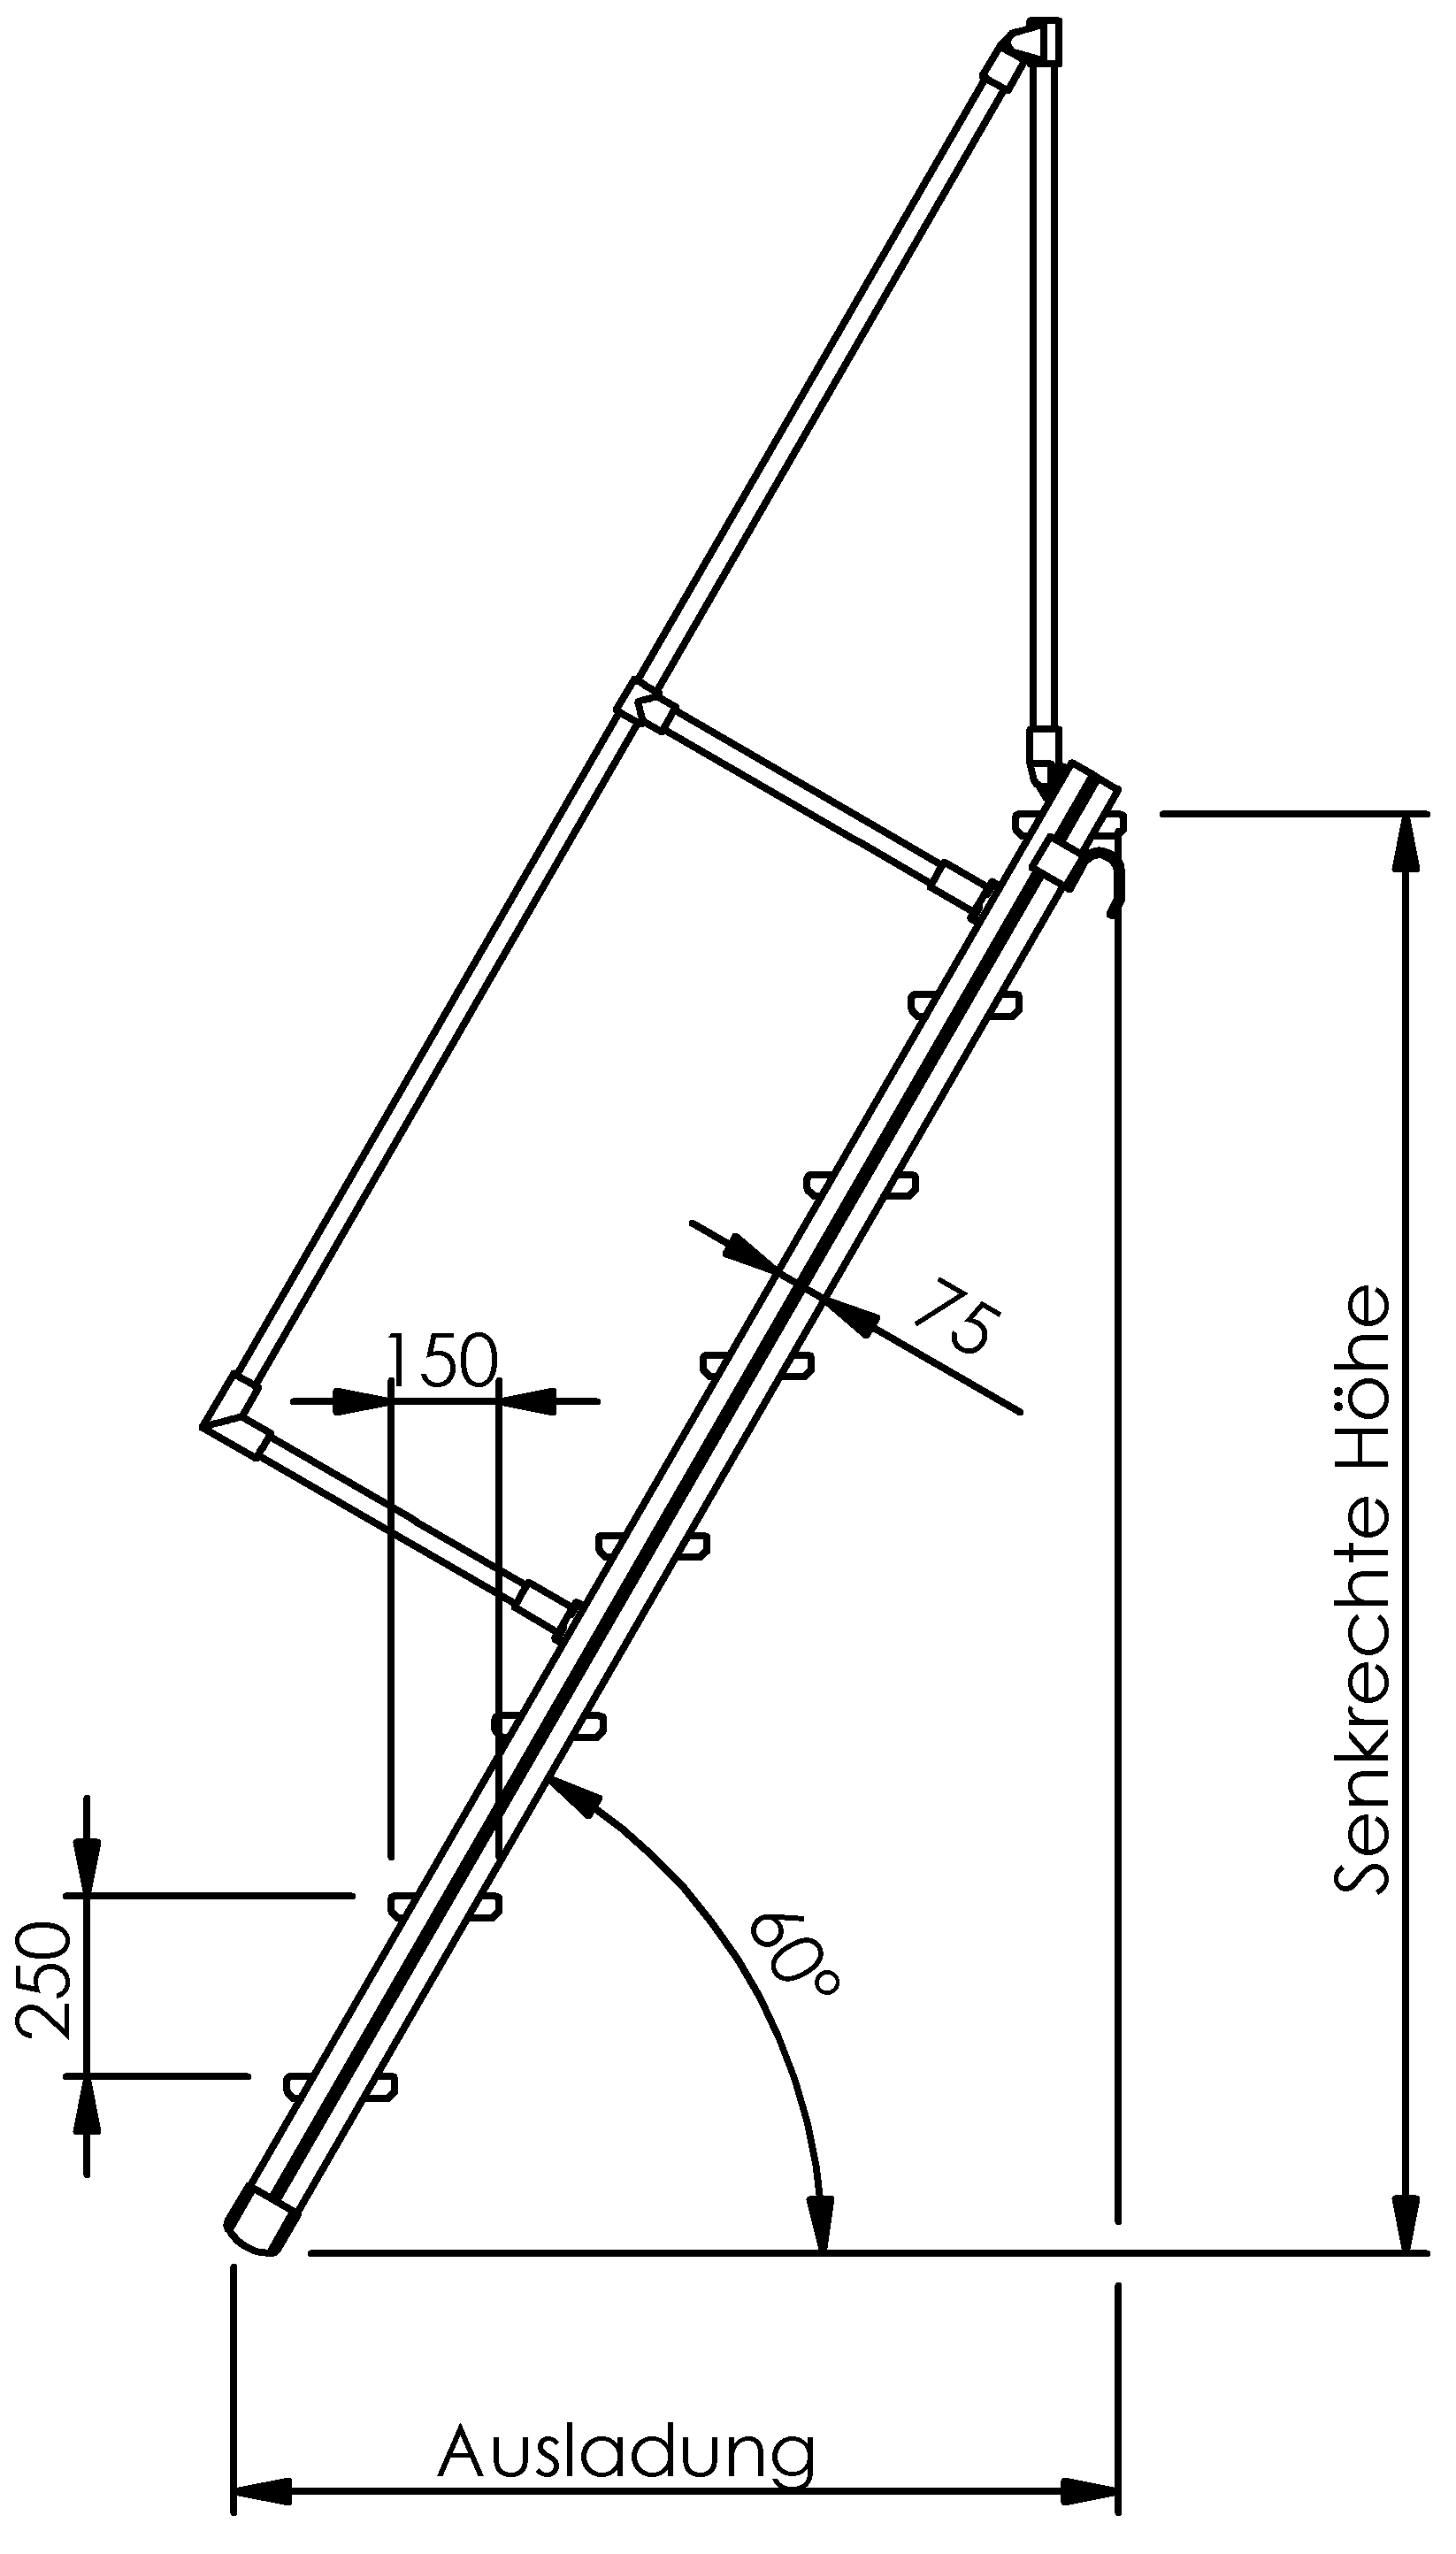 Selbstbautreppen, LW 600mm, Stufen aus Alu